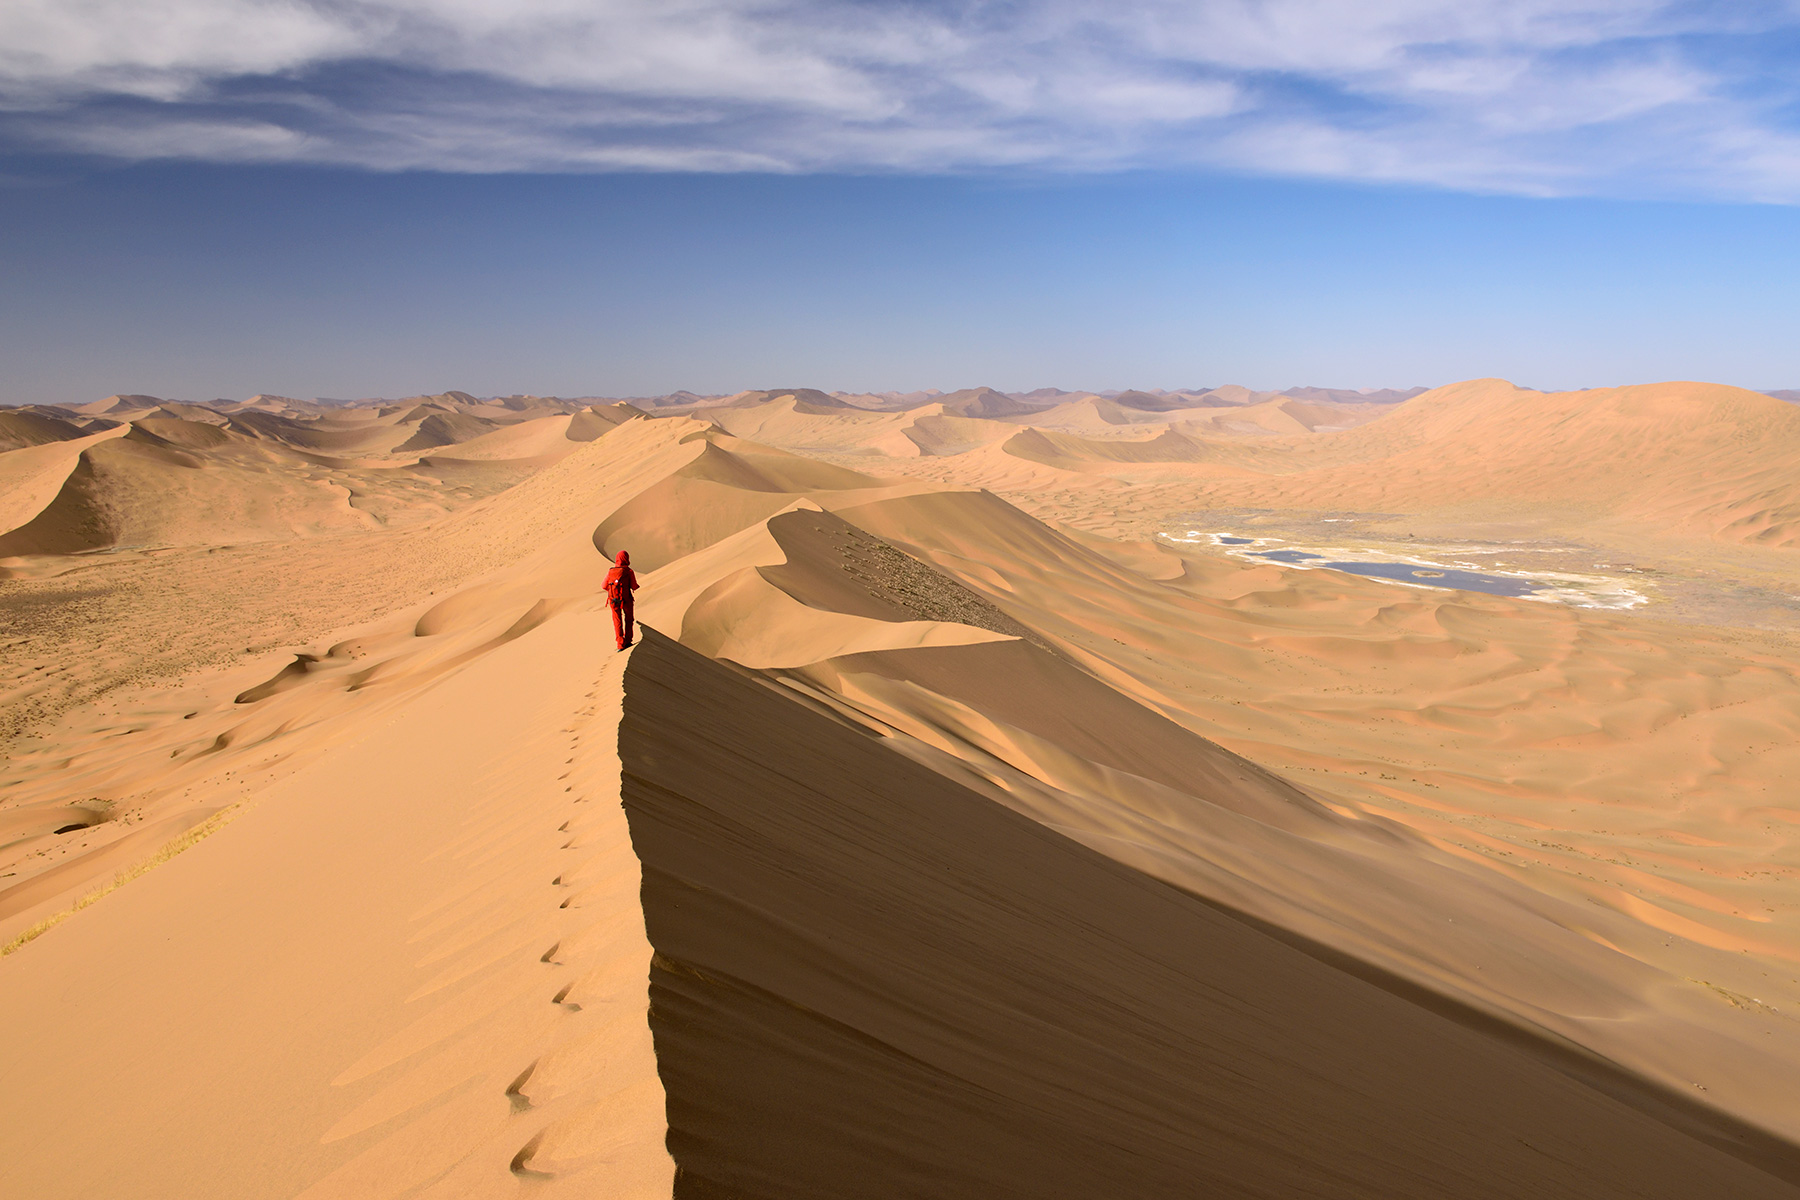 Désert du Badain Jaran (Chine, Mongolie Intérieure) - Vue générale d'un enchaînement de grandes dunes avec randonneuse sur la crête. Vallée avec lac salé à droite.